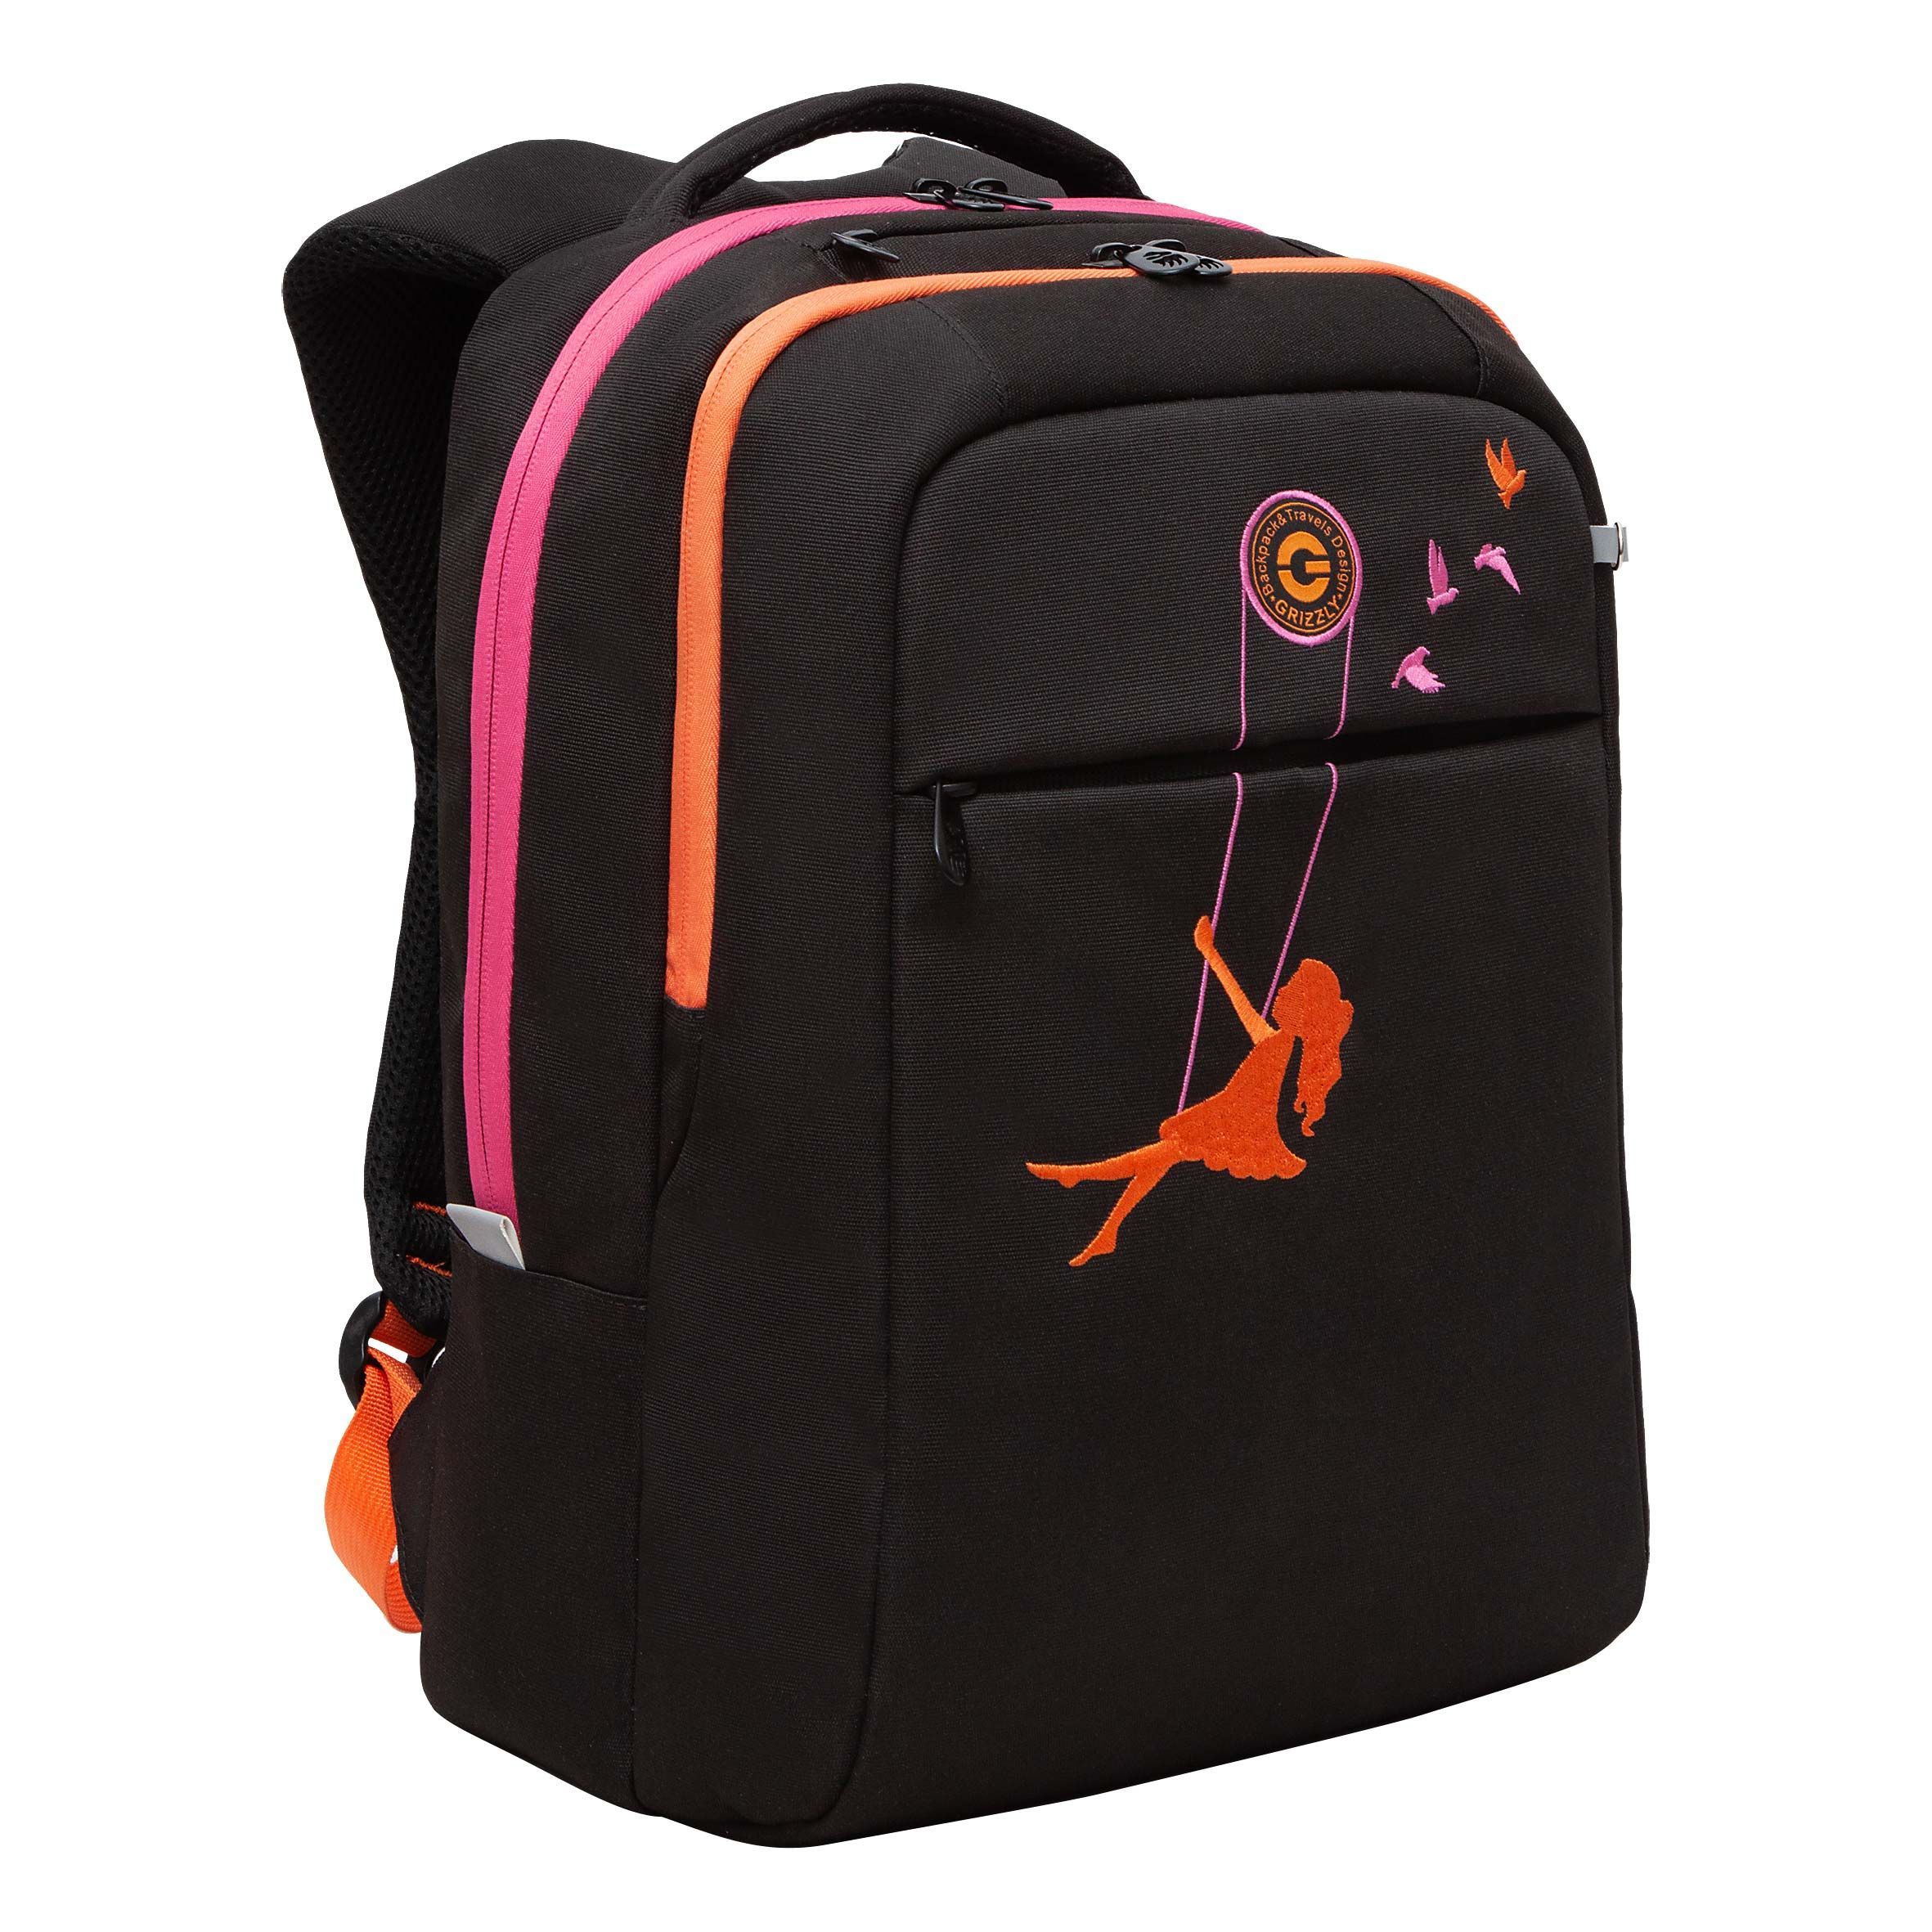 Рюкзак GRIZZLY RD-344-2 молодежный на каждый день вместительный черный-оранжевый школьный анатомический рюкзак grizzly ru 437 4 4 оранжевый